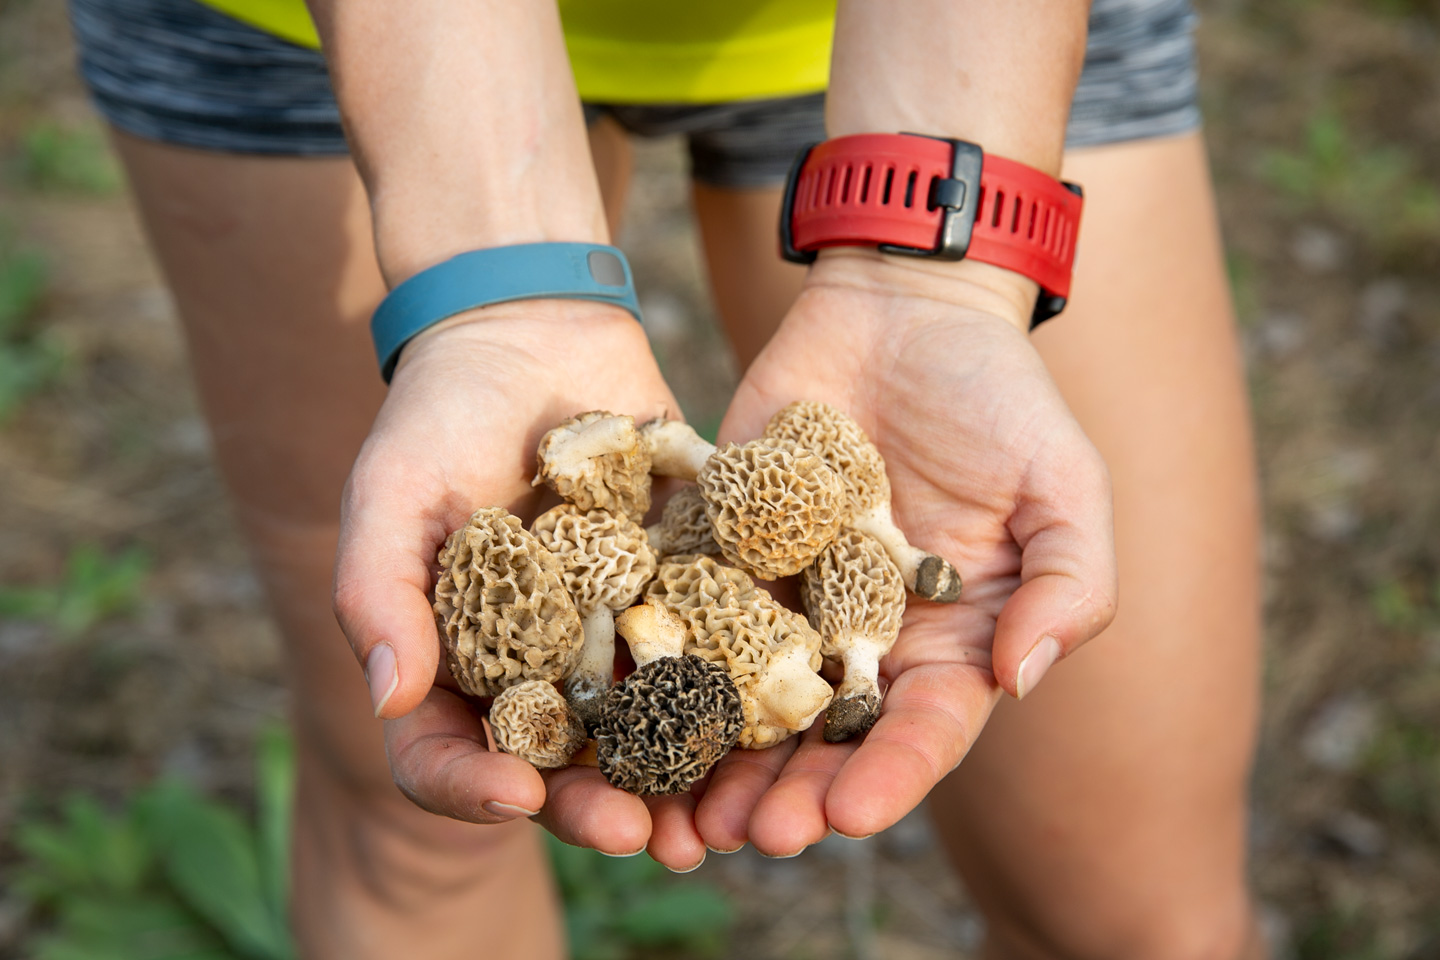 Morel mushroom season has begun in Nebraska